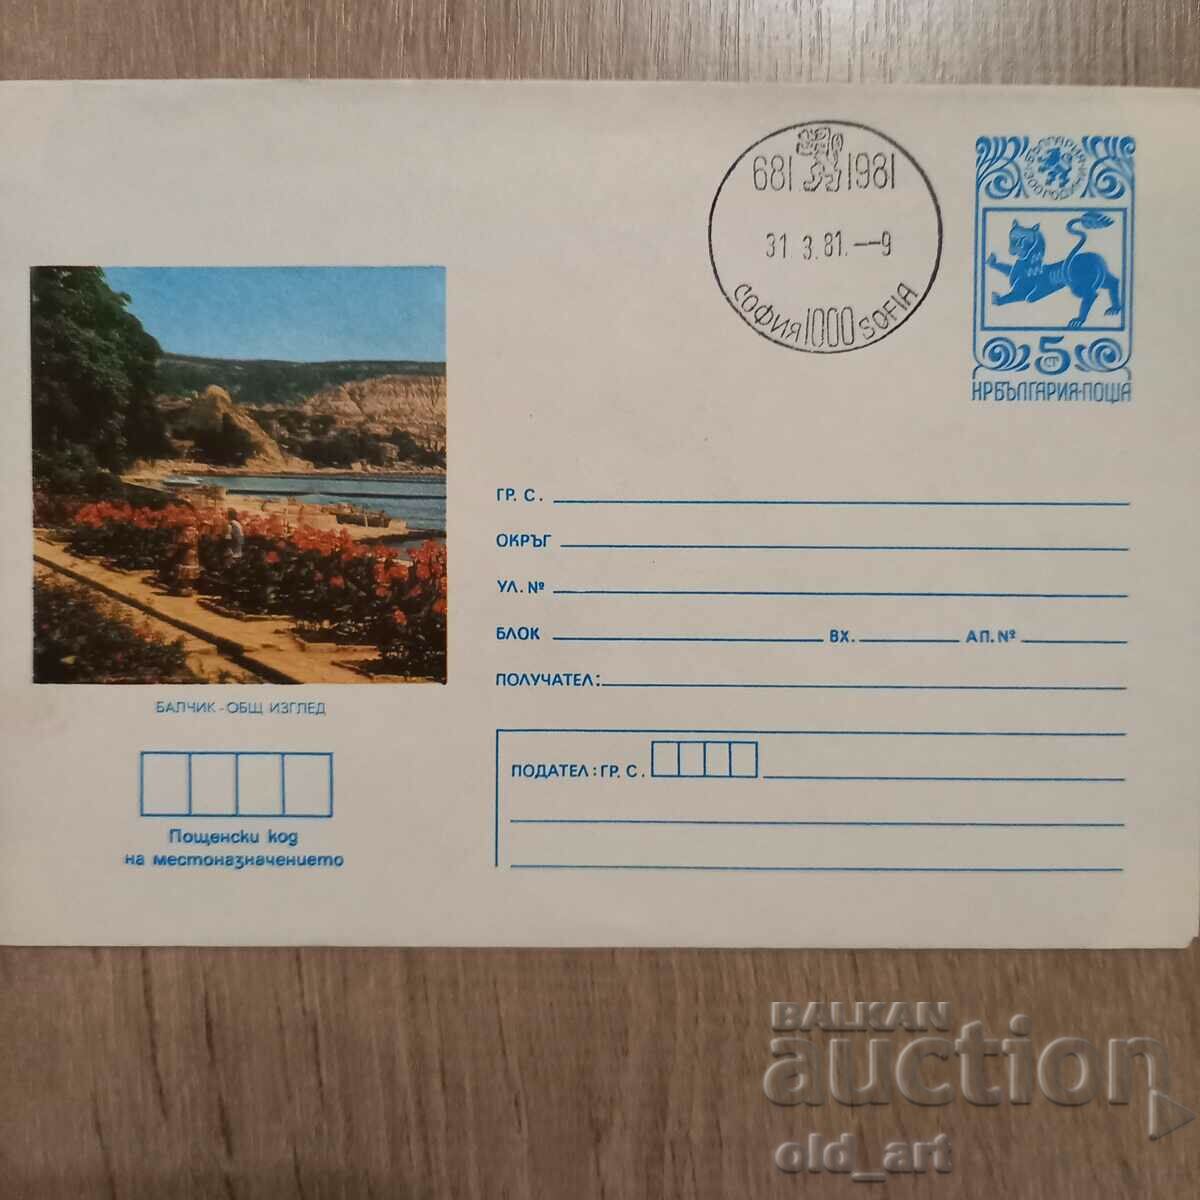 Ταχυδρομικός φάκελος - Balchik, Γενική άποψη